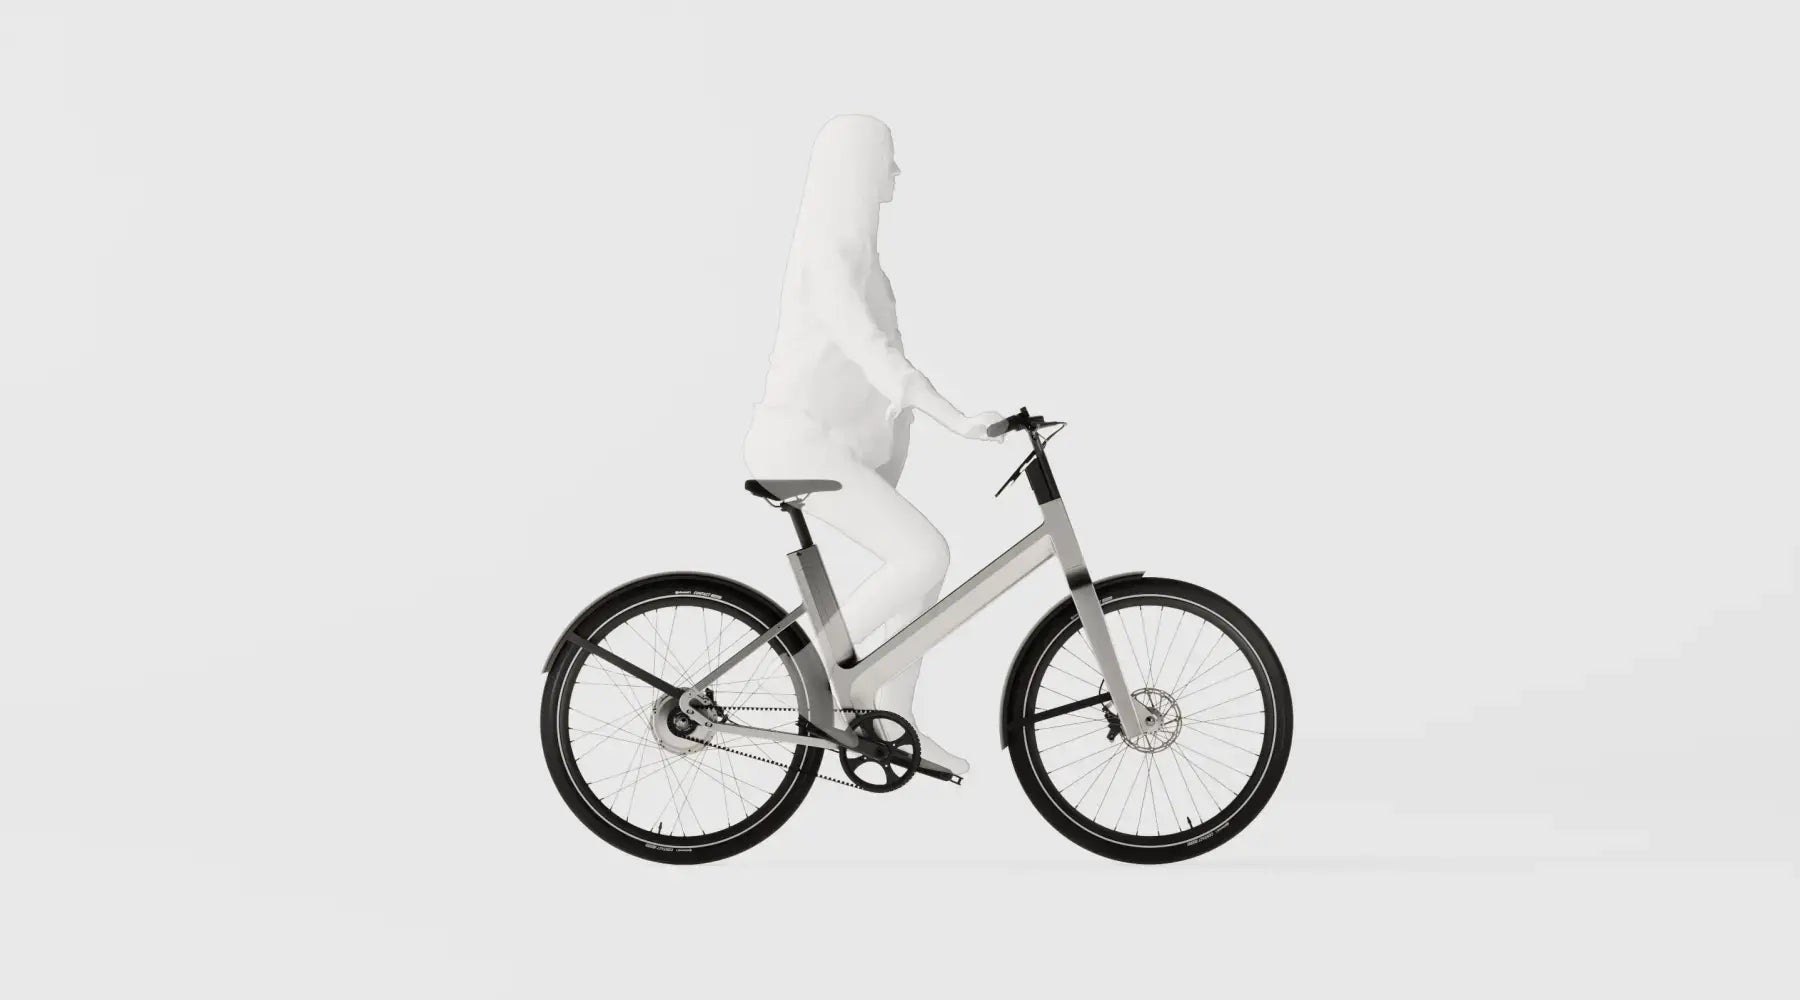 Guide d’achat : quelle taille de vélo choisir pour un confort optimal ?